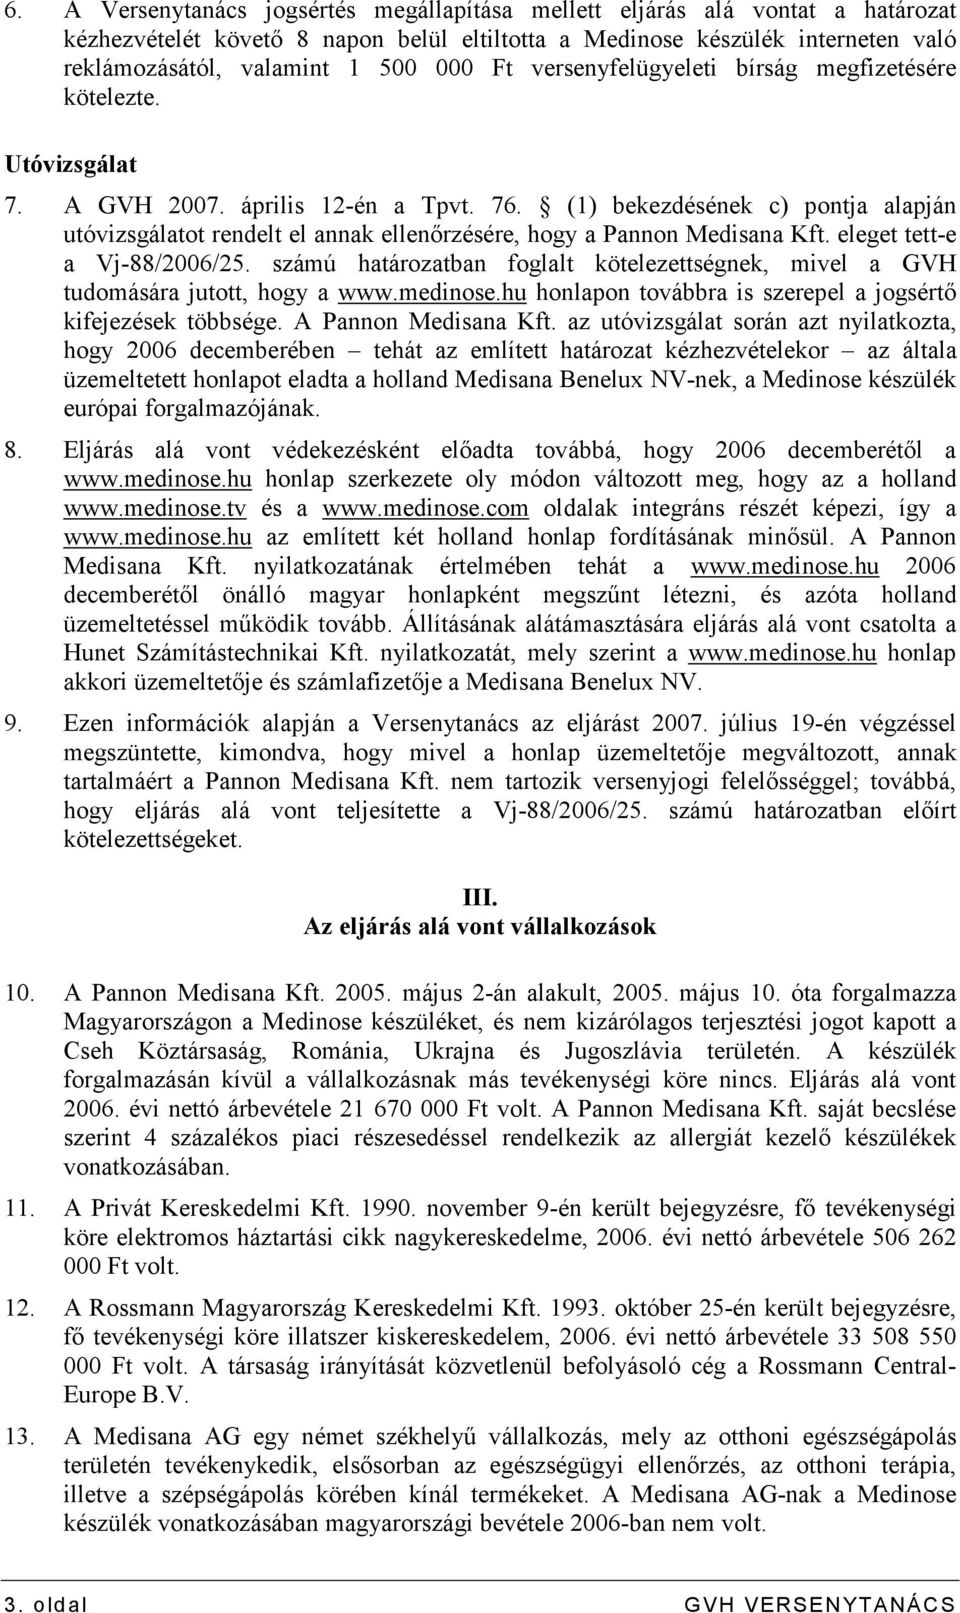 (1) bekezdésének c) pontja alapján utóvizsgálatot rendelt el annak ellenırzésére, hogy a Pannon Medisana Kft. eleget tett-e a Vj-88/2006/25.